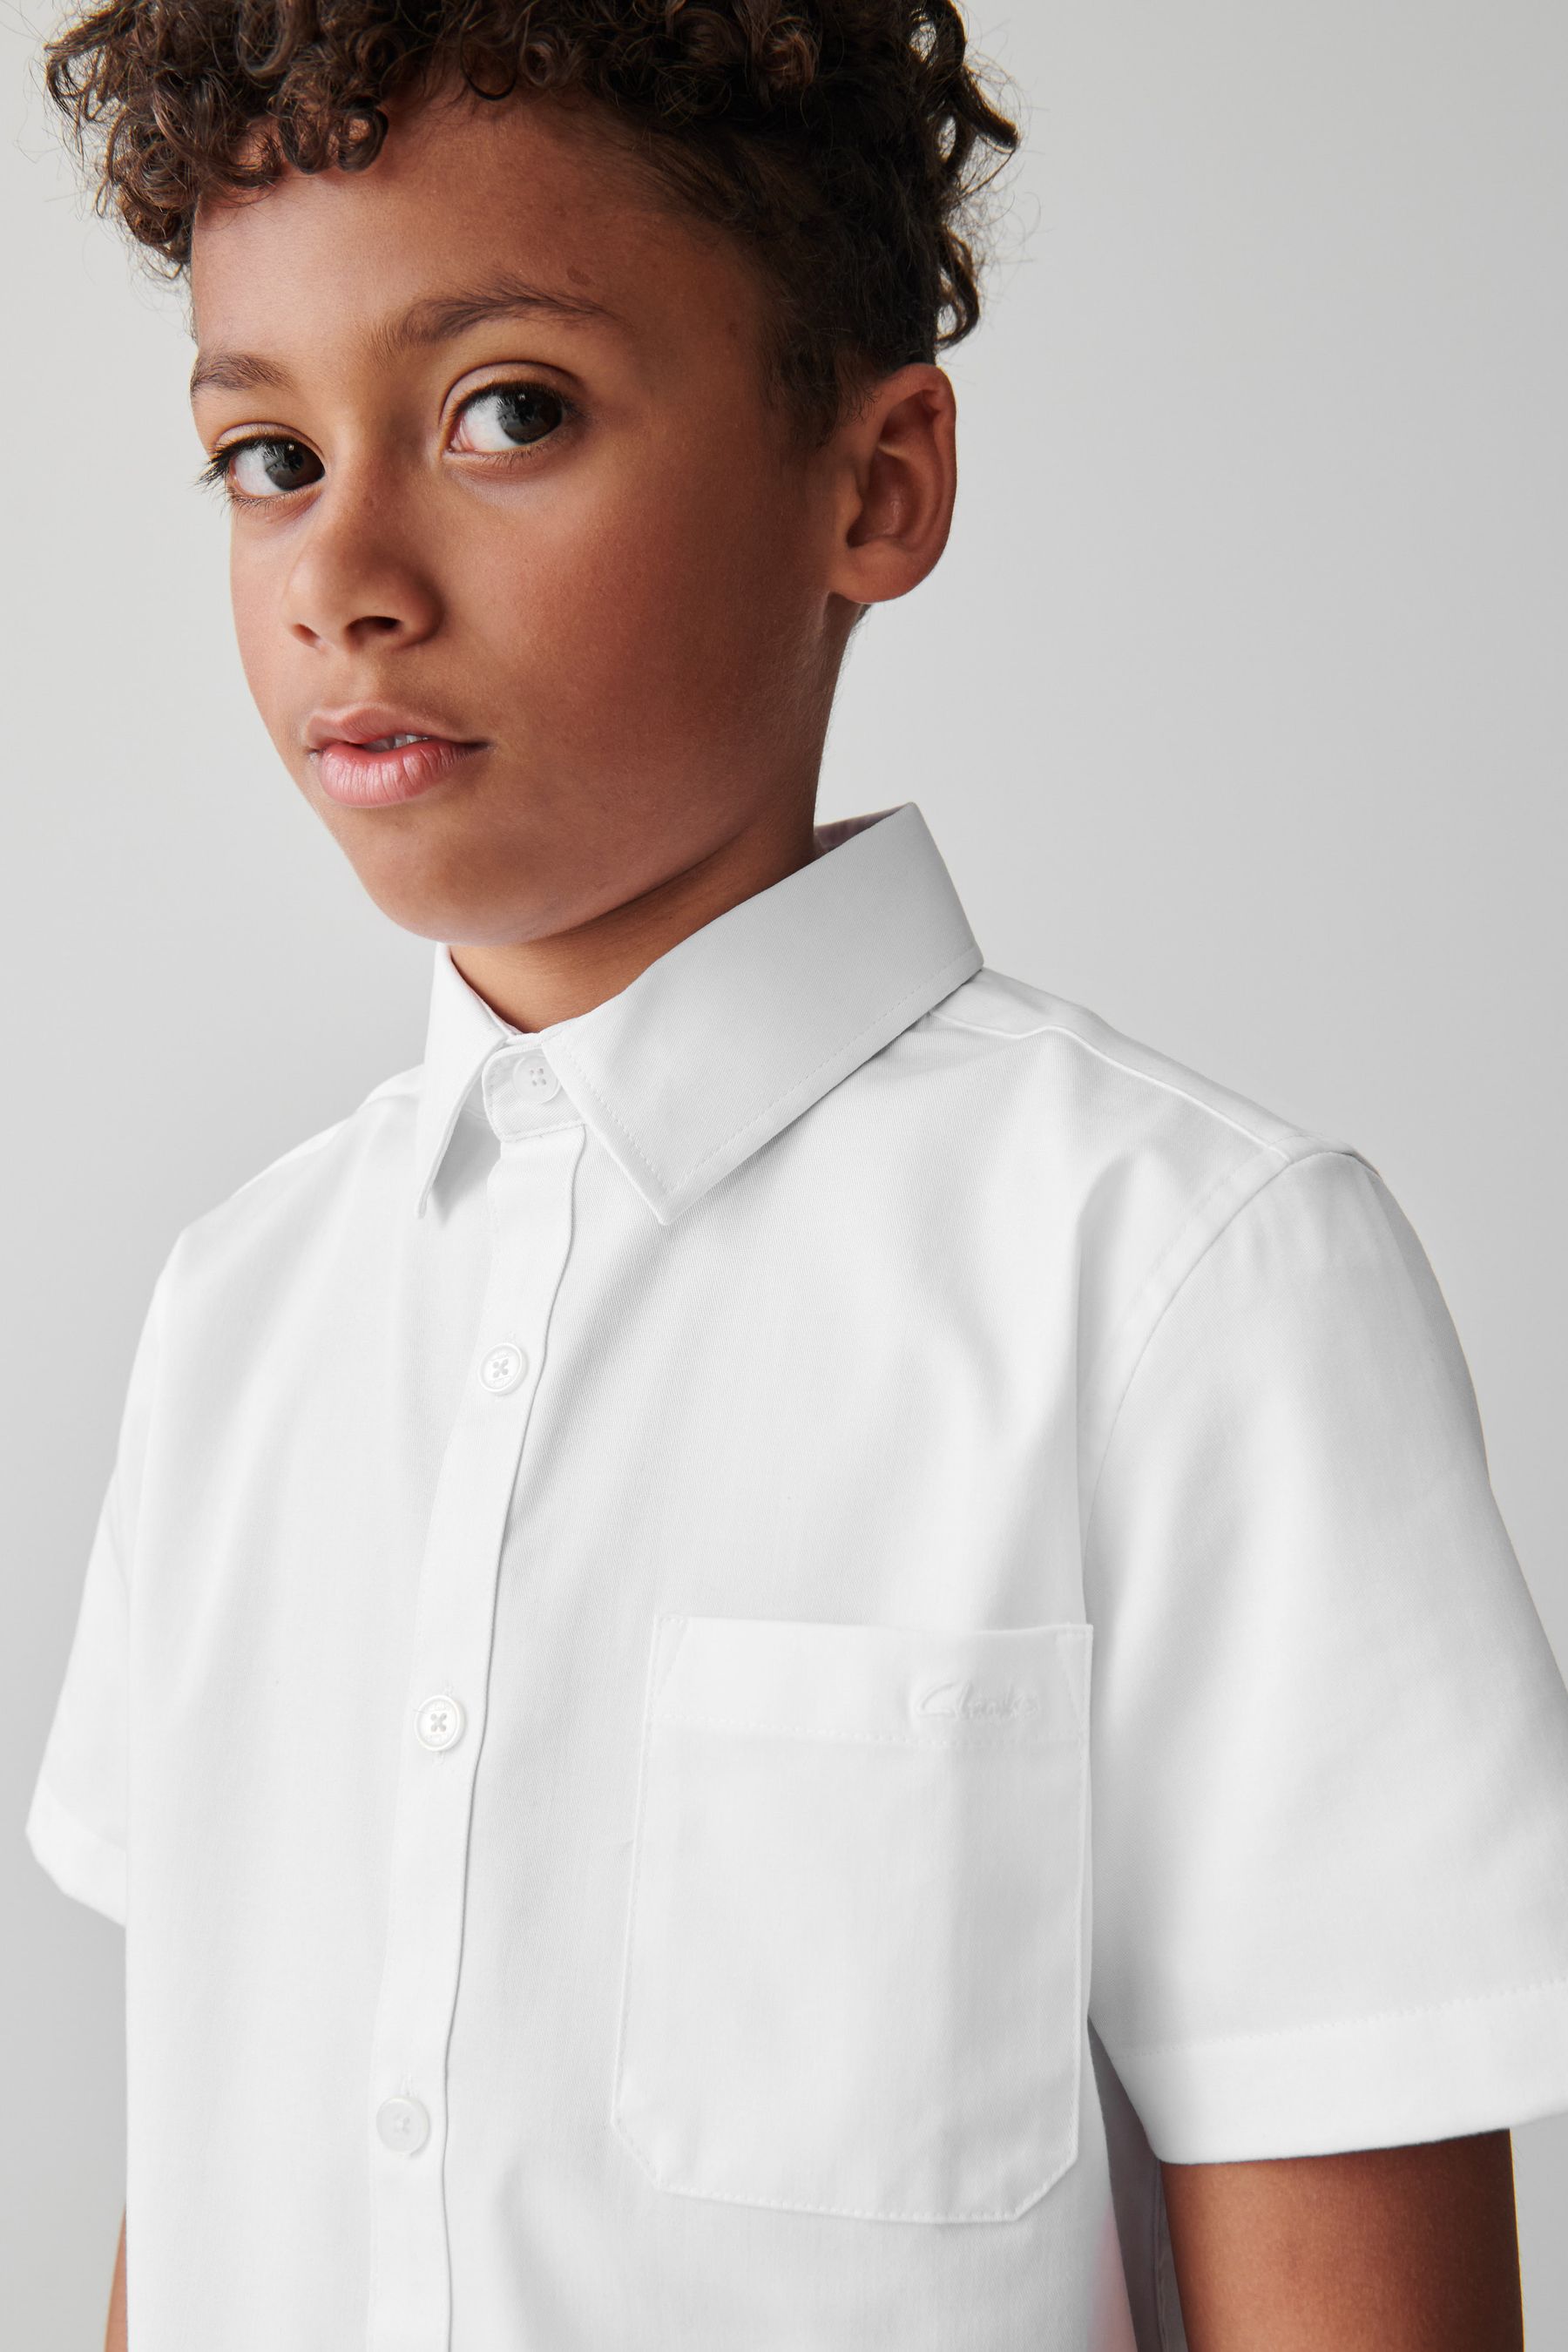 Buy Clarks White Short Sleeve Senior Boys School Shirt with Stretch ...